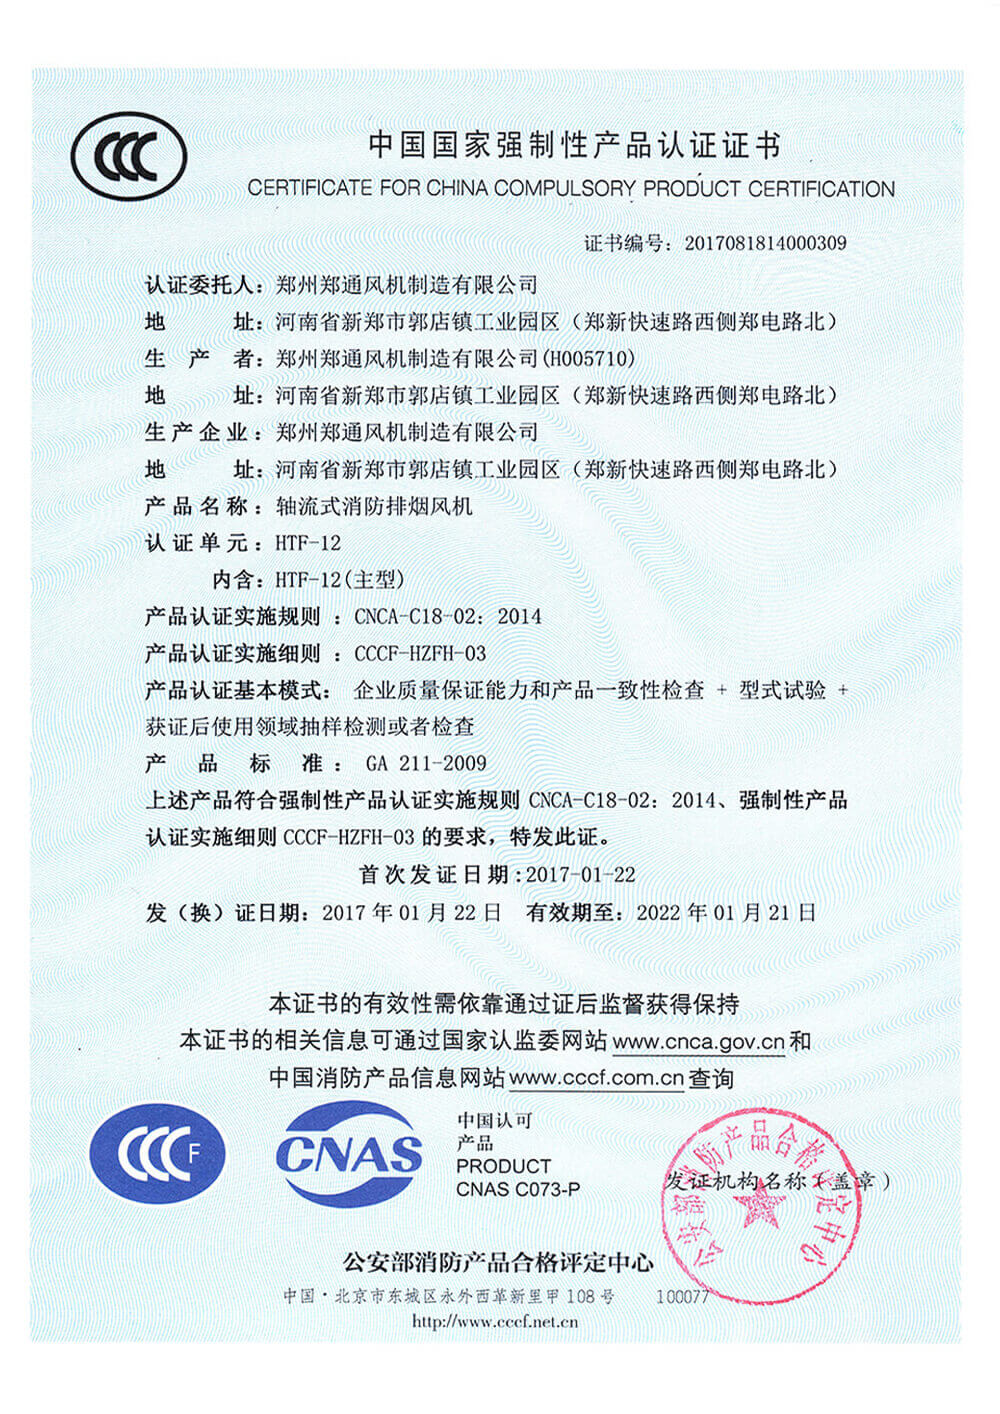 HTF-12 3C認證證書